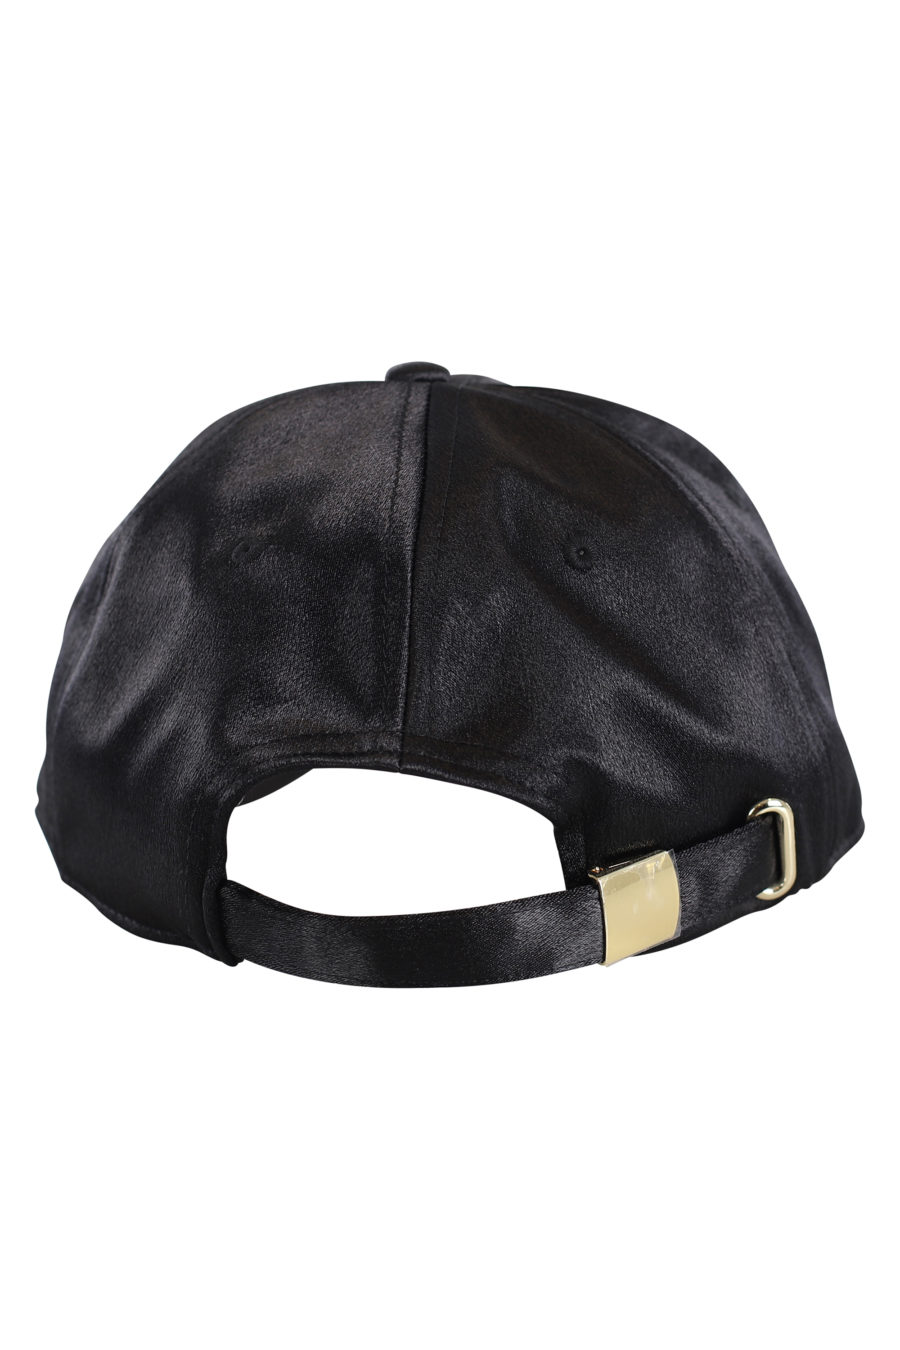 Gorra negra de satín con logo negro bordado - IMG 0157